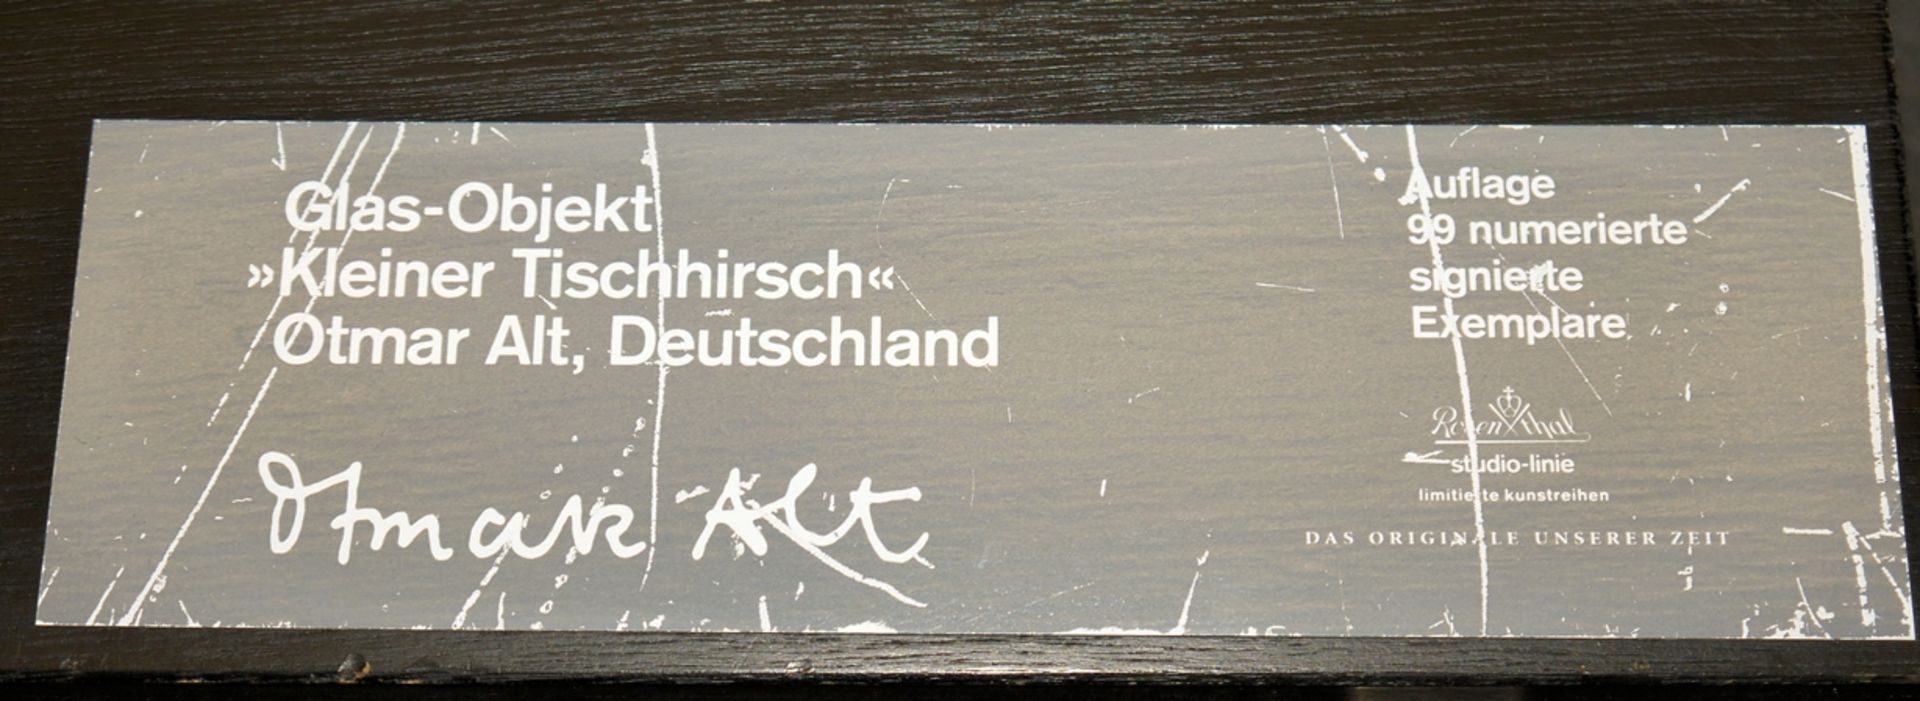 Otmar Alt, "Kleiner Tischhirsch", glass object Rosenthal - Image 2 of 2